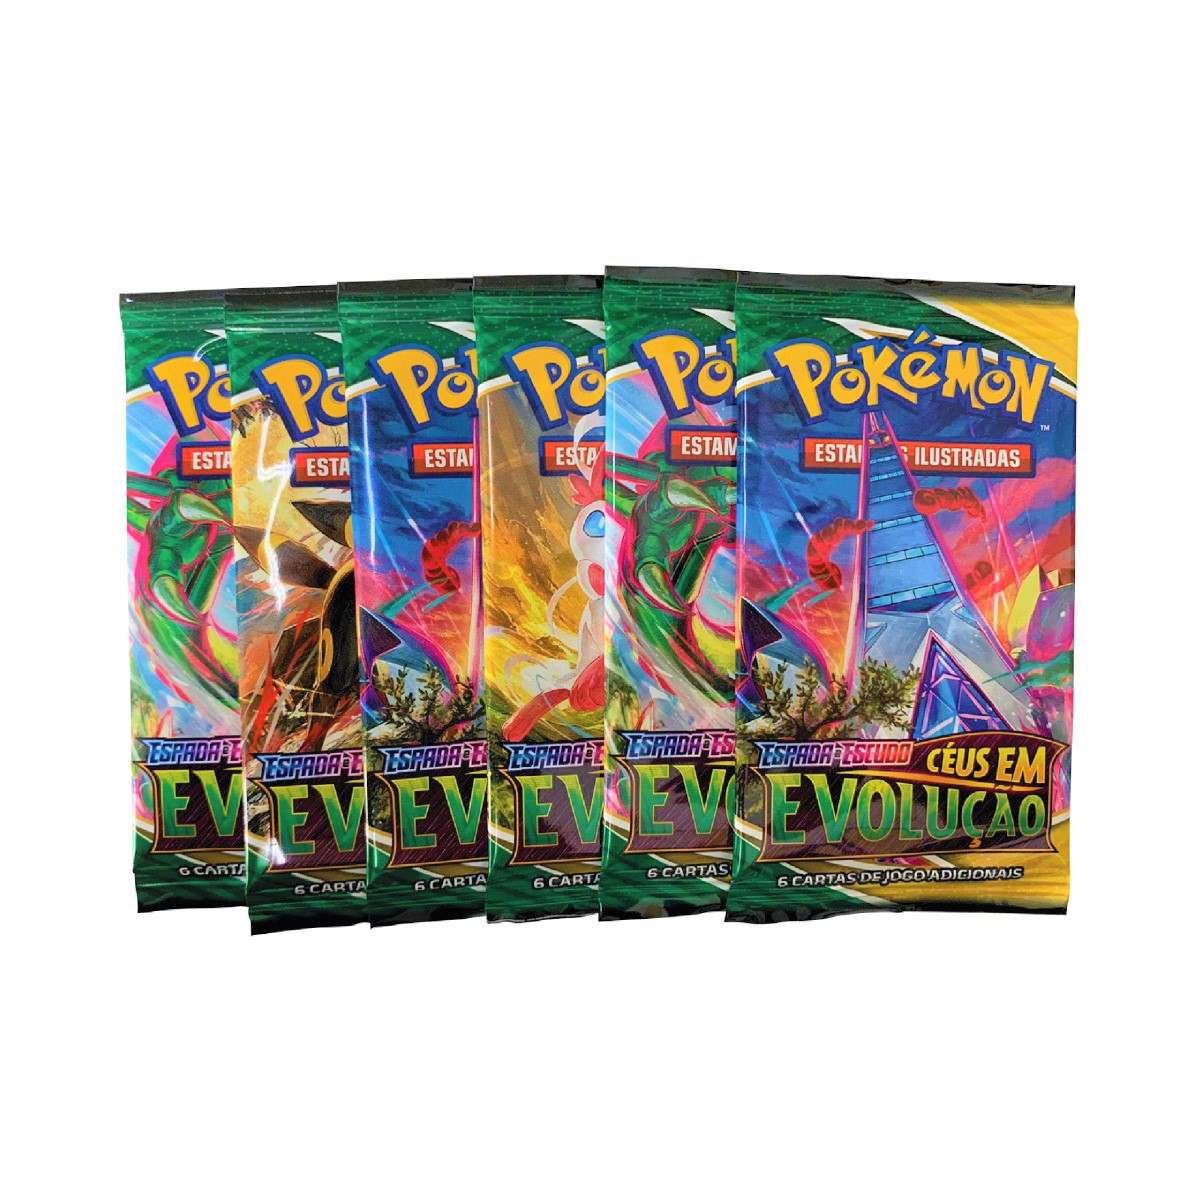 Box Cartas Pokémon Booster 36 Pacotes Espada Escudo Céus em Evolução 216 Cartas